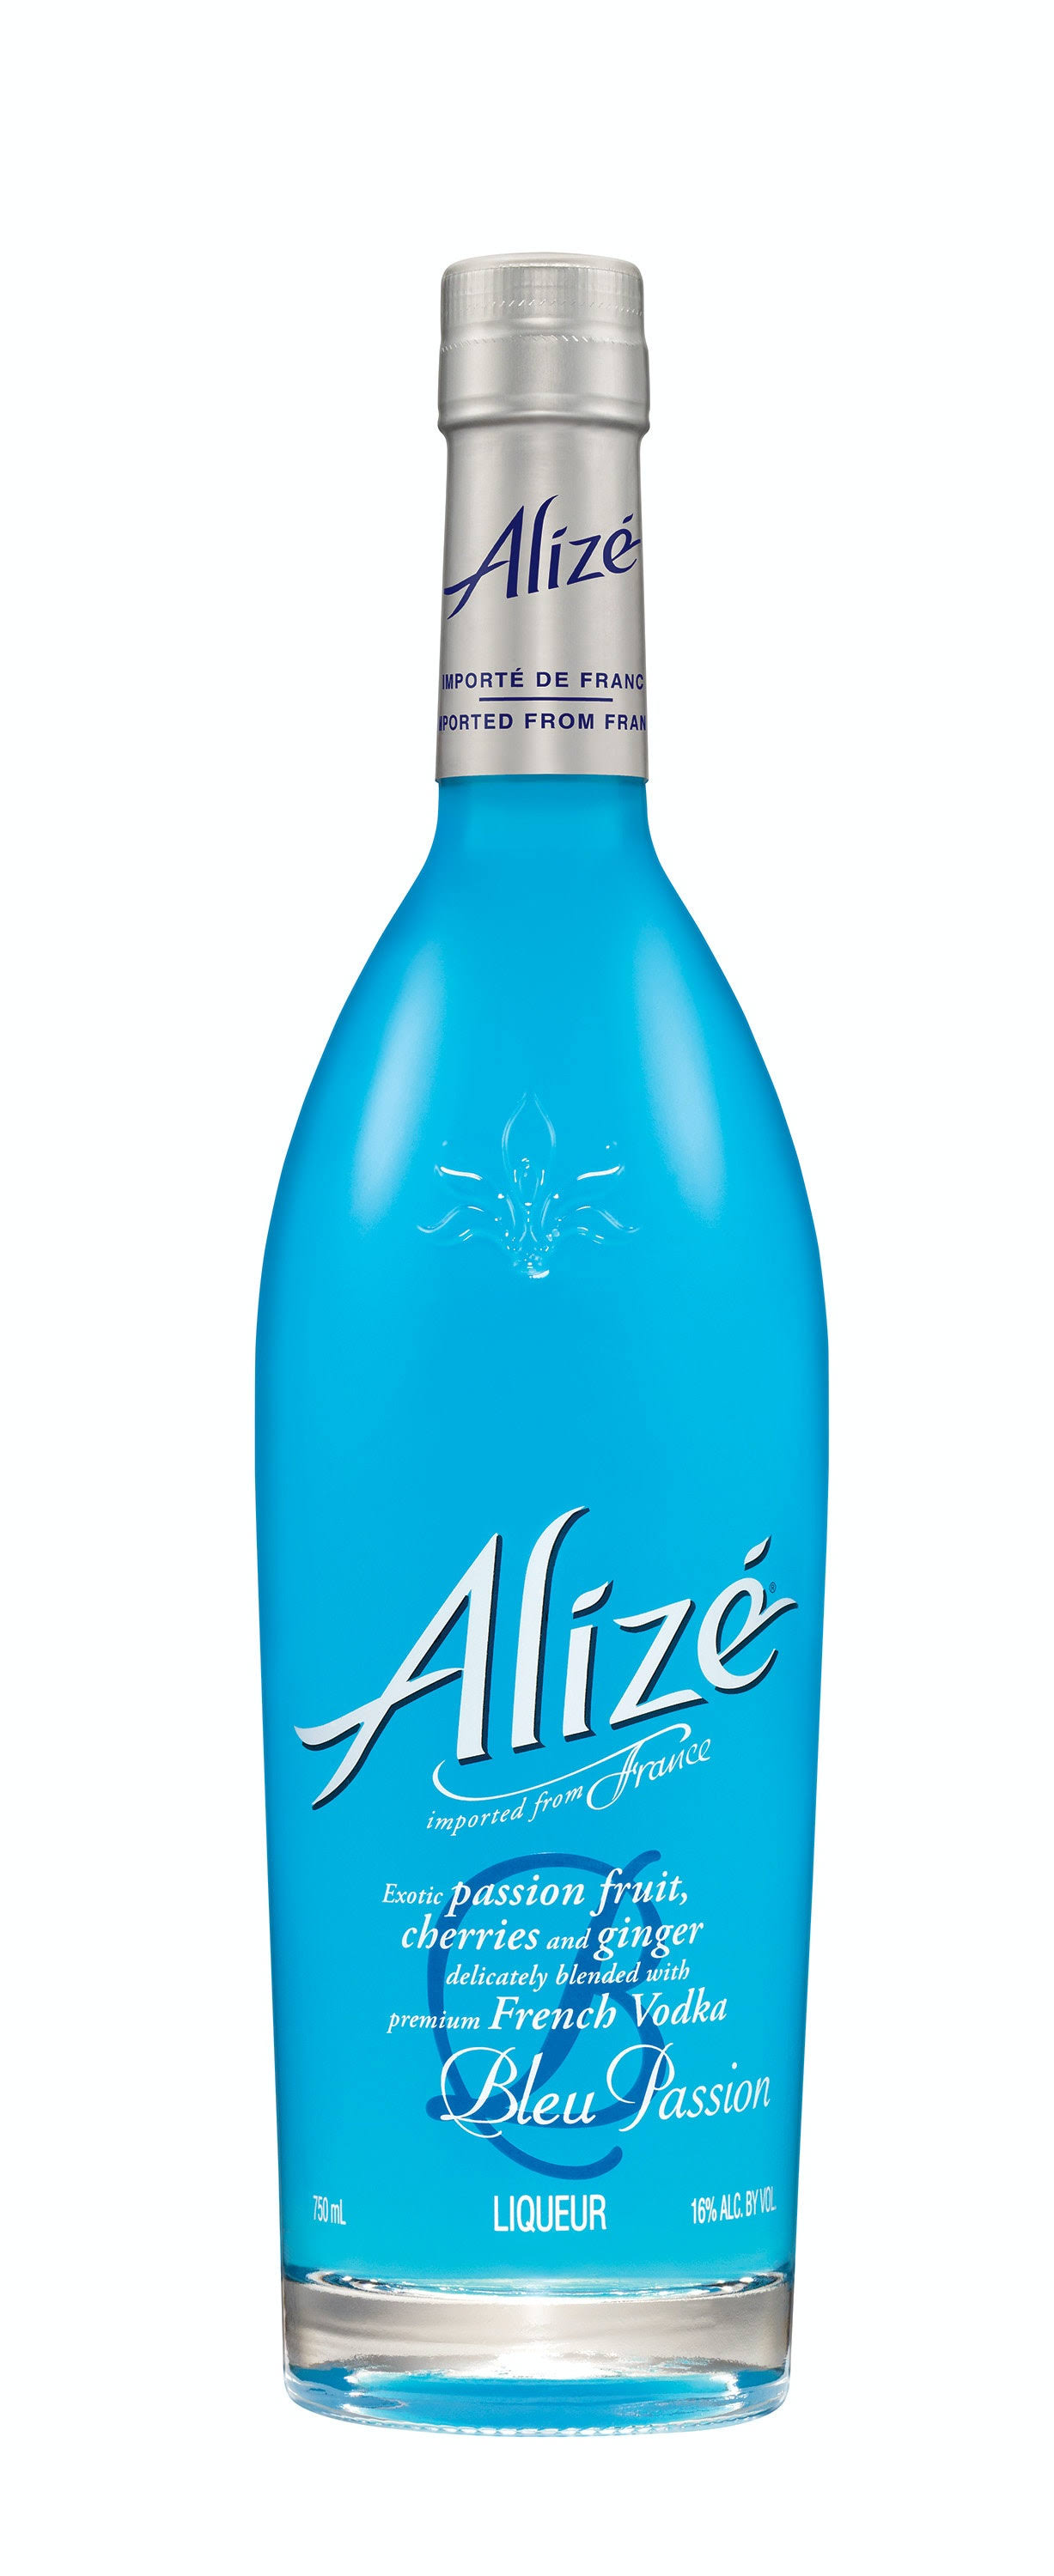 Alize Gold Passion Liqueur - 750 ml bottle